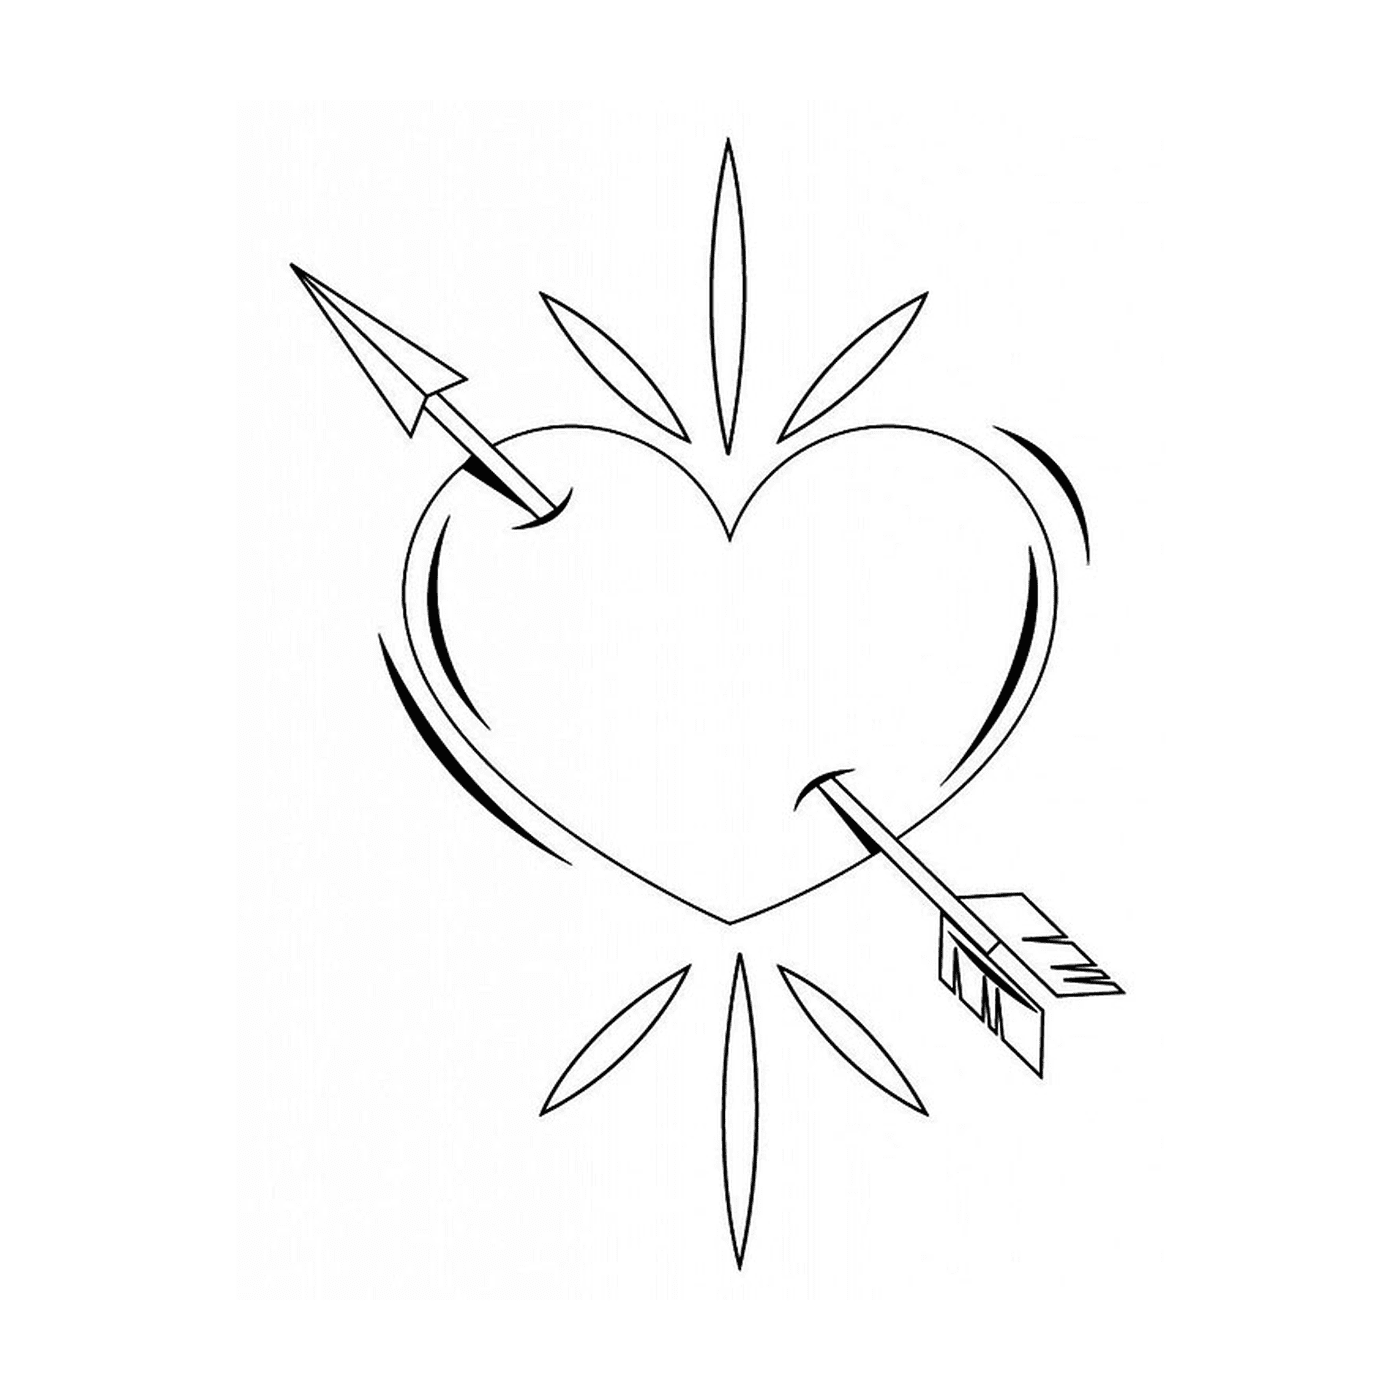  Um coração perfurado por uma seta desenhada em tinta preta 